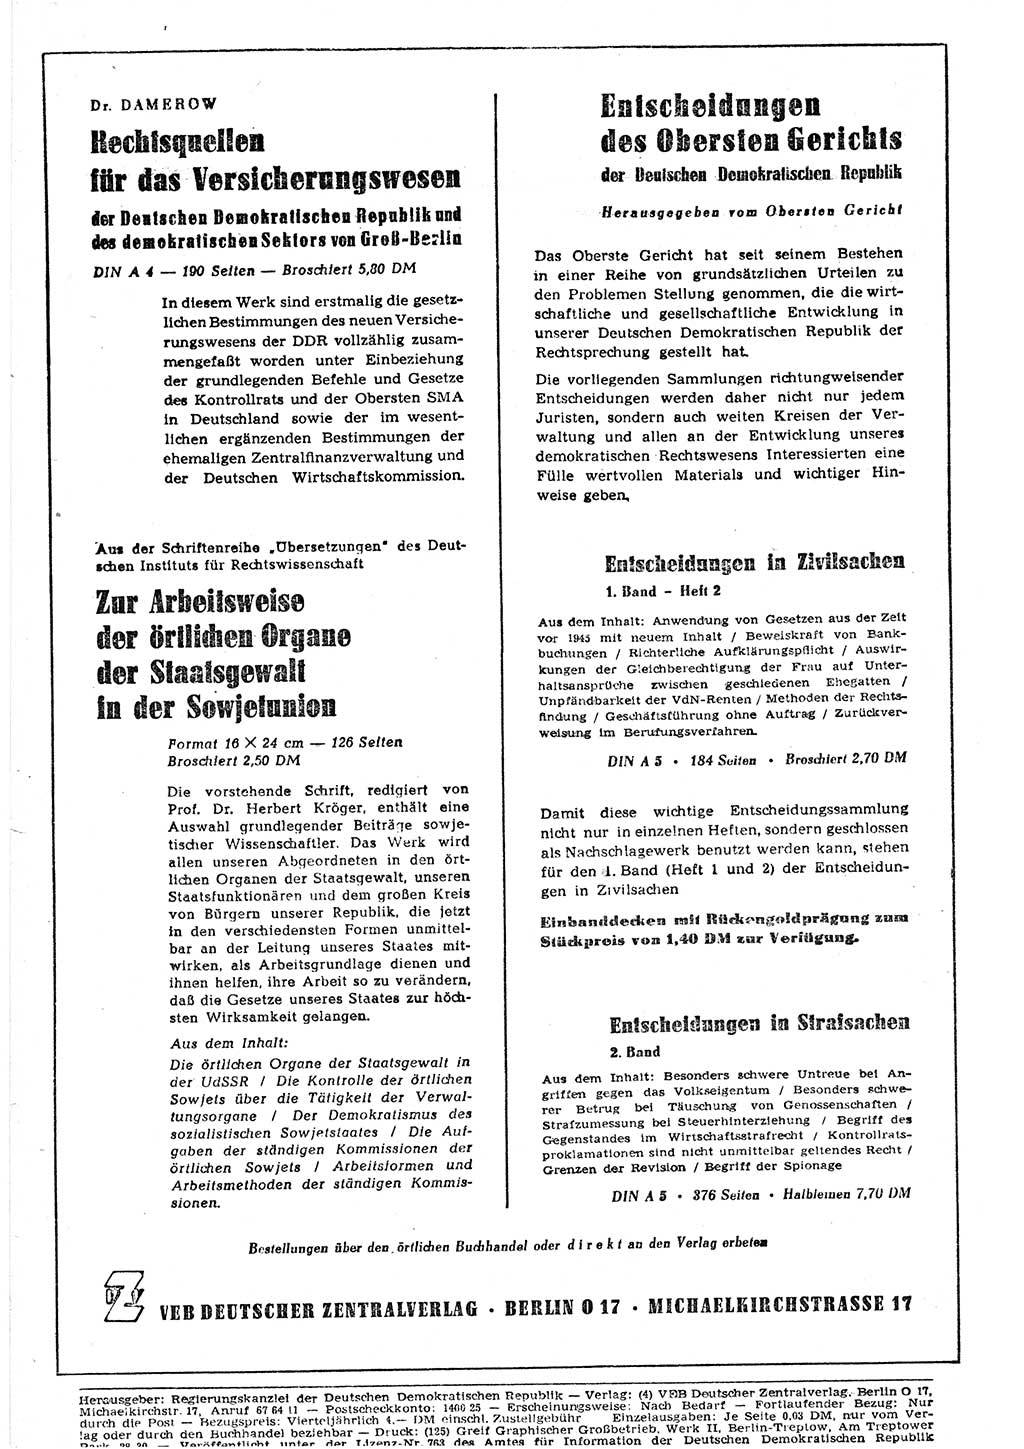 Gesetzblatt (GBl.) der Deutschen Demokratischen Republik (DDR) 1953, Seite 354 (GBl. DDR 1953, S. 354)